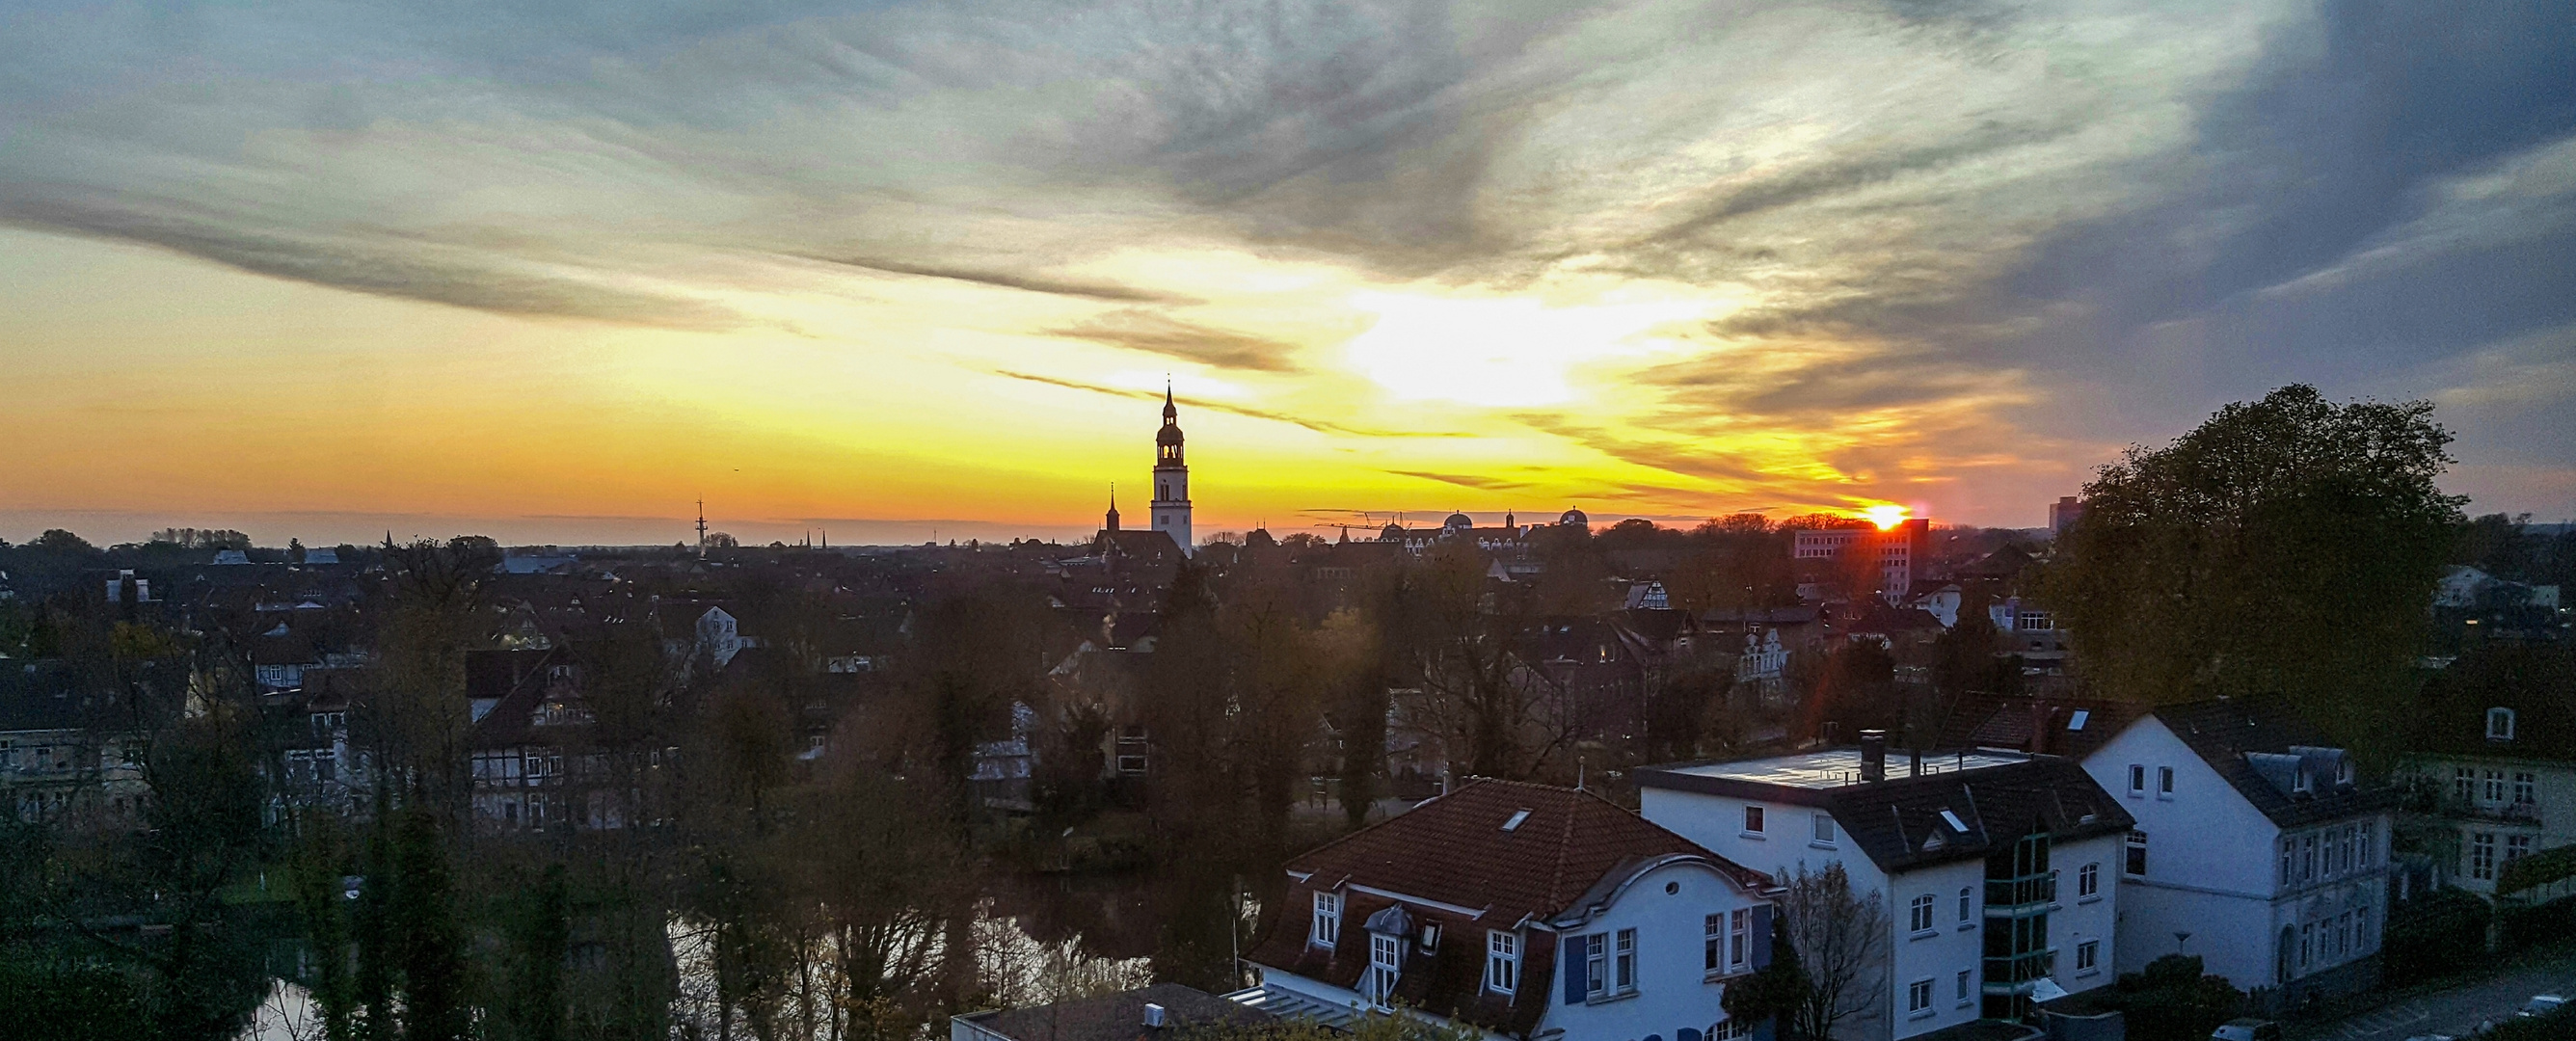 Sonnenuntergang in Celle